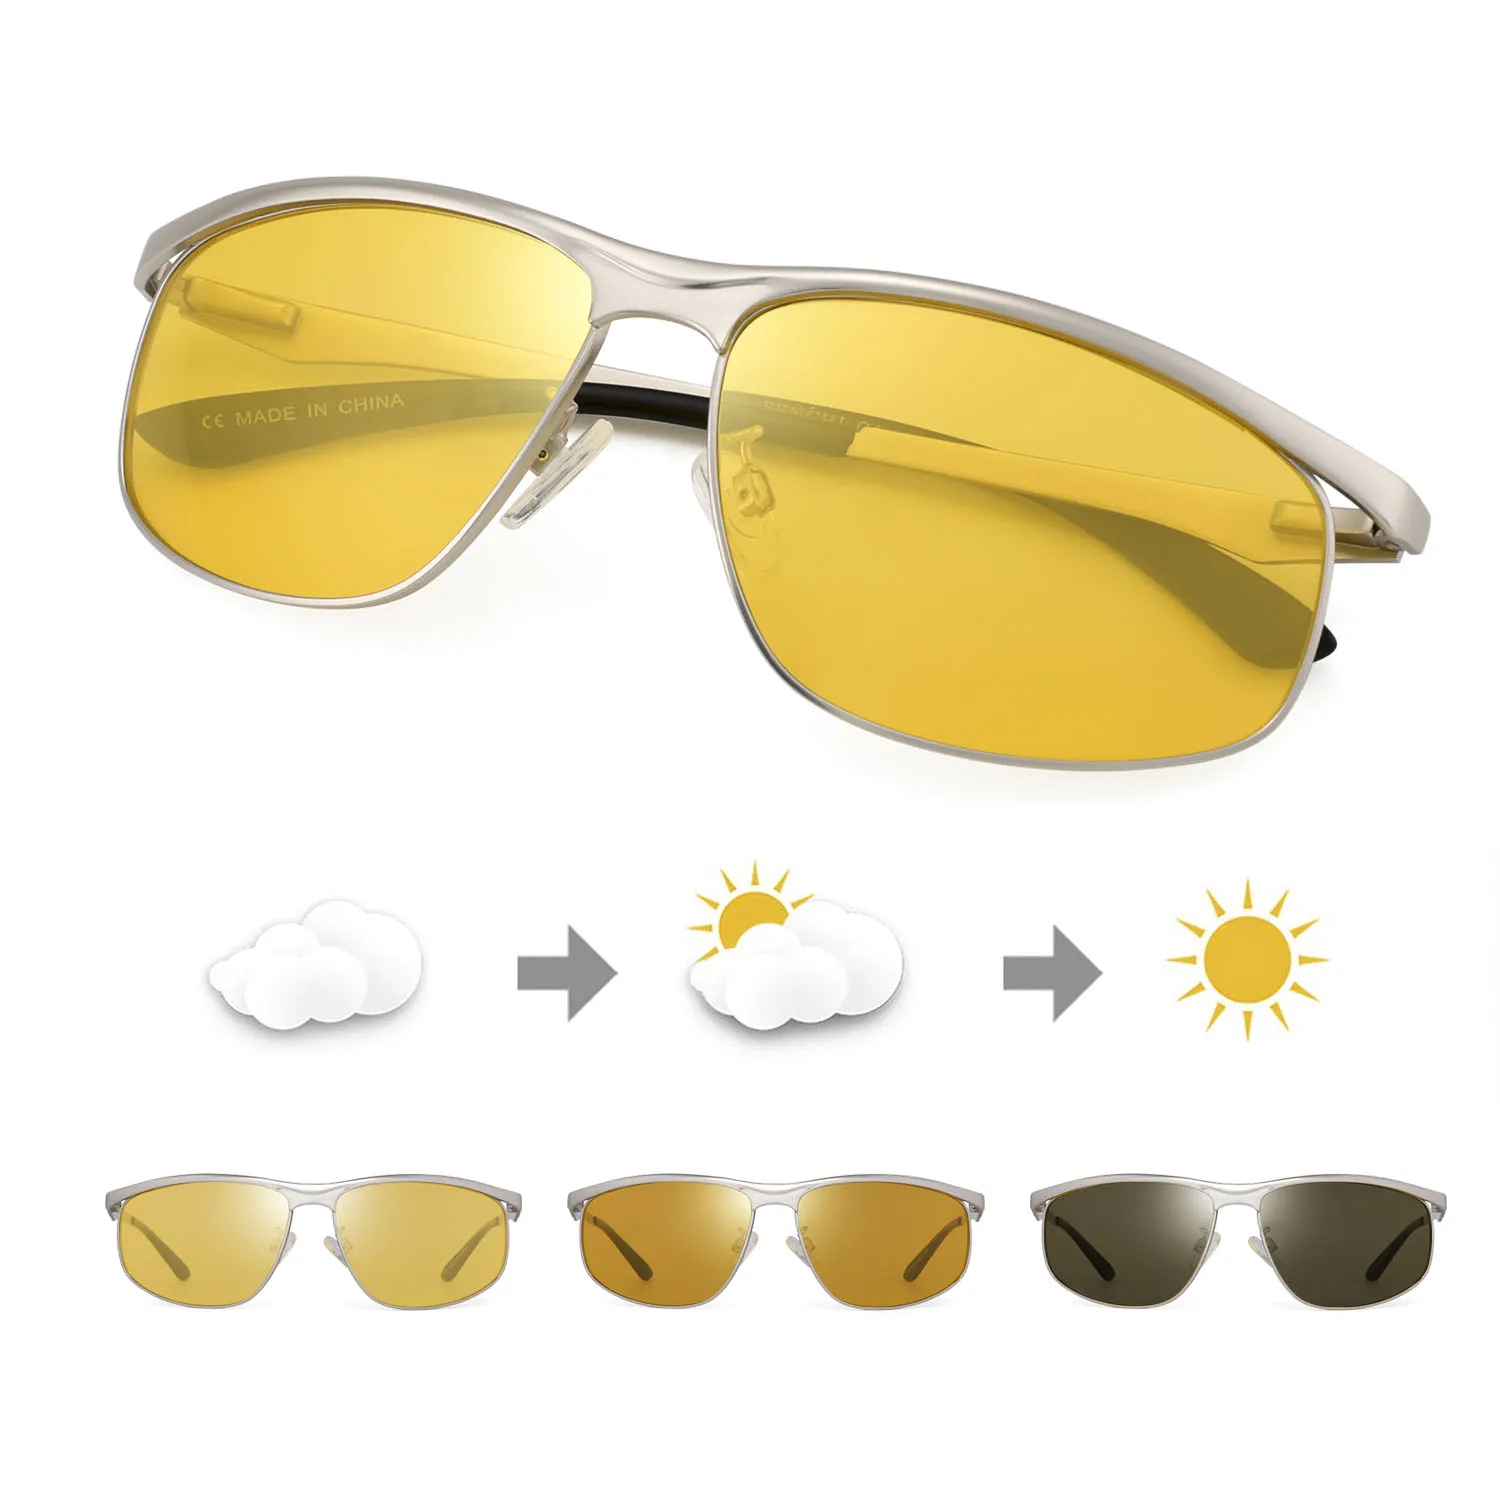 Мужские очки ночного видения, поляризованные очки ночного видения, женские антибликовые линзы, желтые солнцезащитные очки для вождения, очки ночного видения для автомобиля